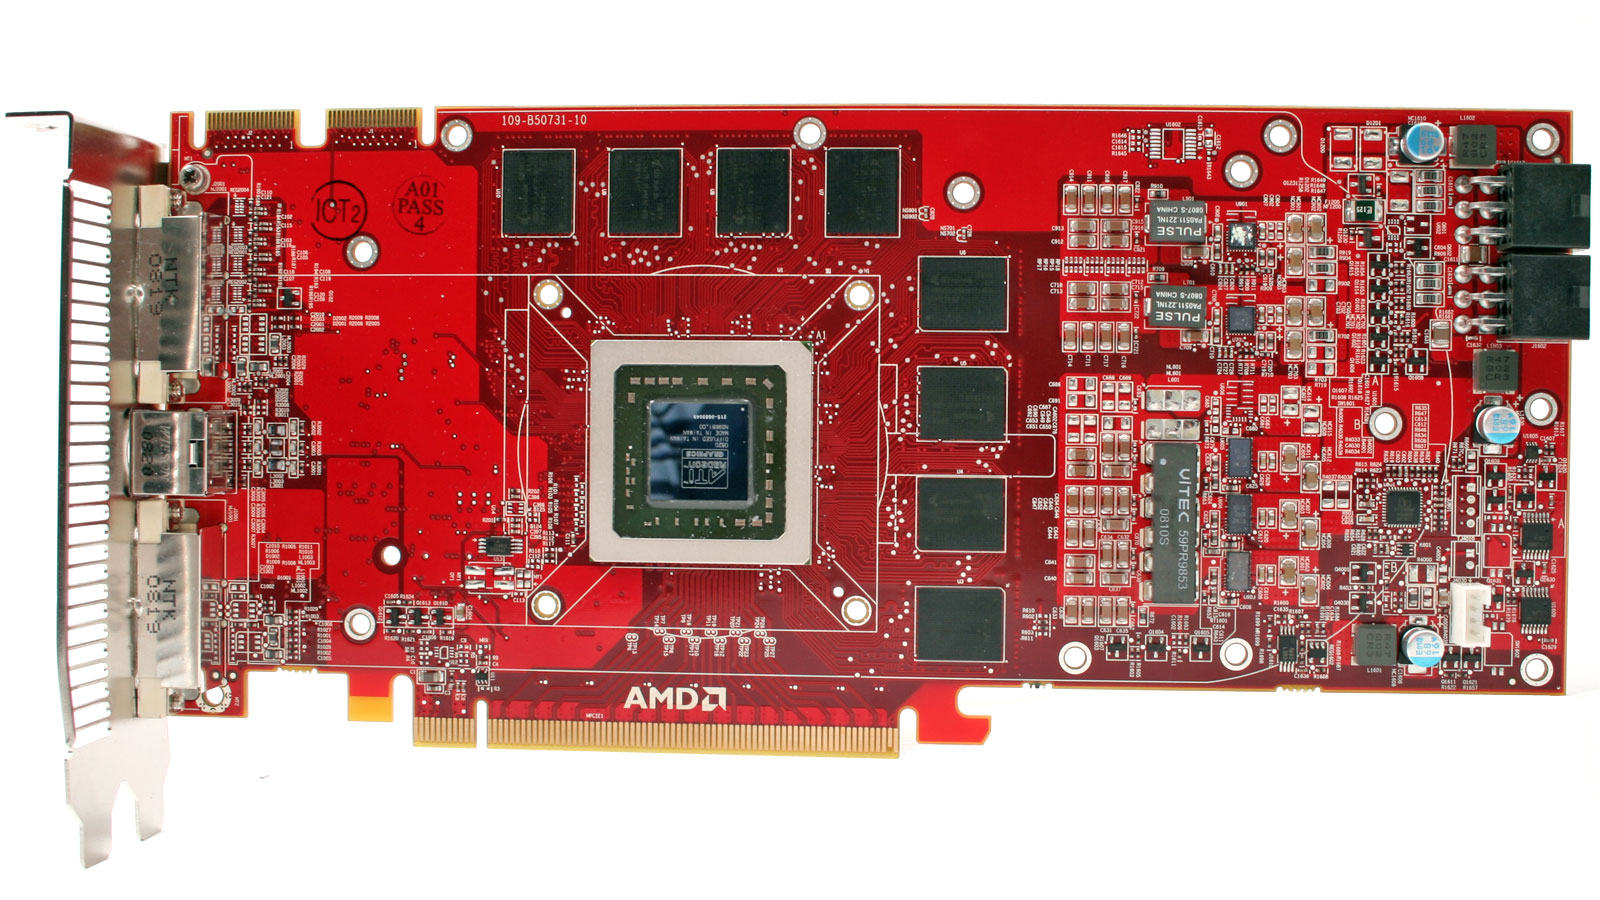 Обзор технических характеристик графической системы Radeon HD 4870